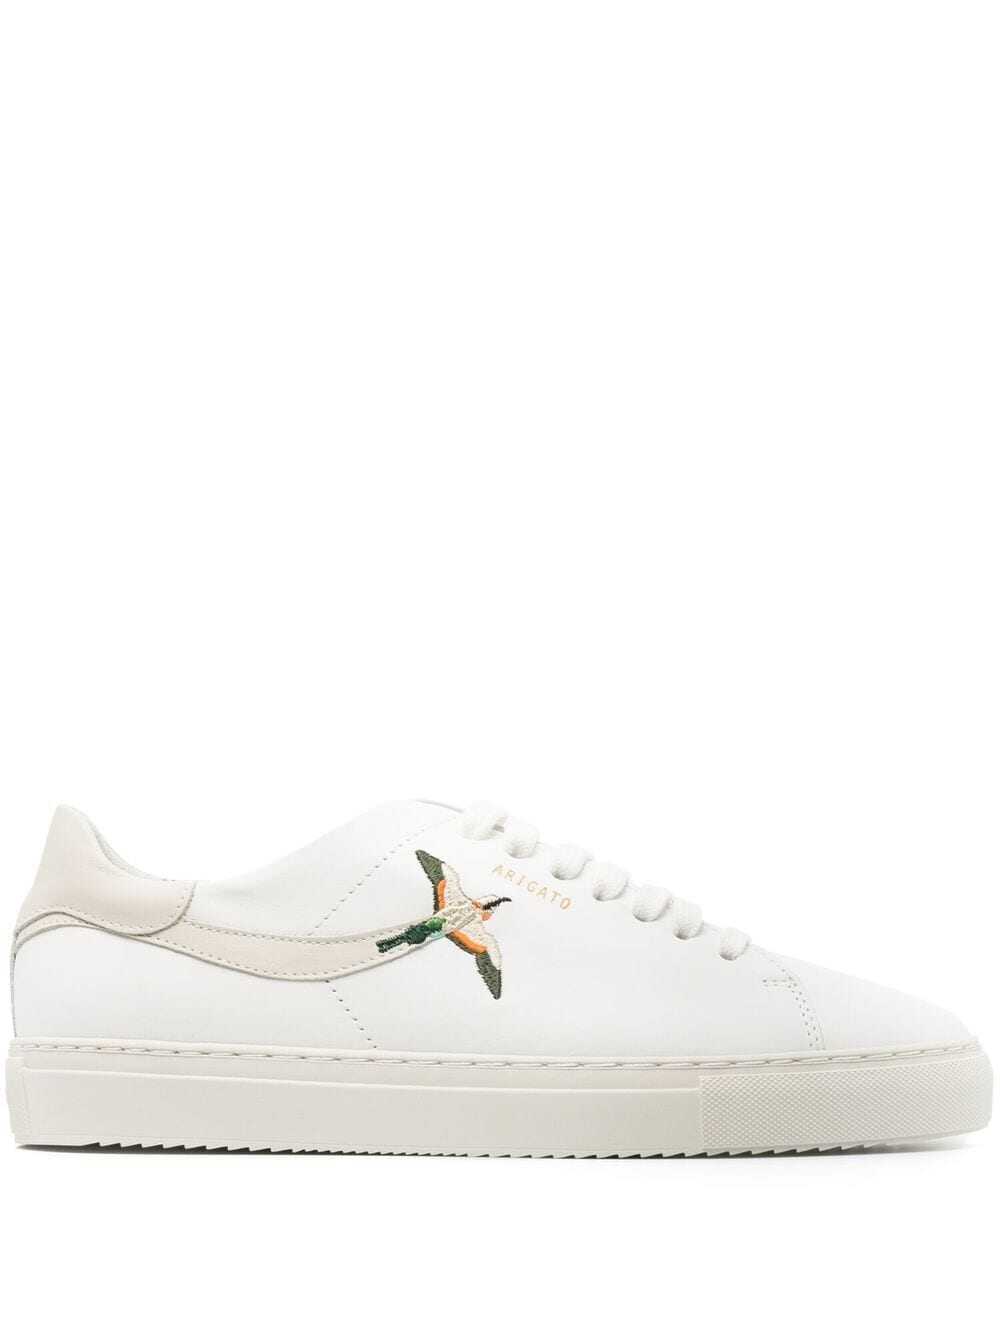 AXEL ARIGATO Sneakers White White image8